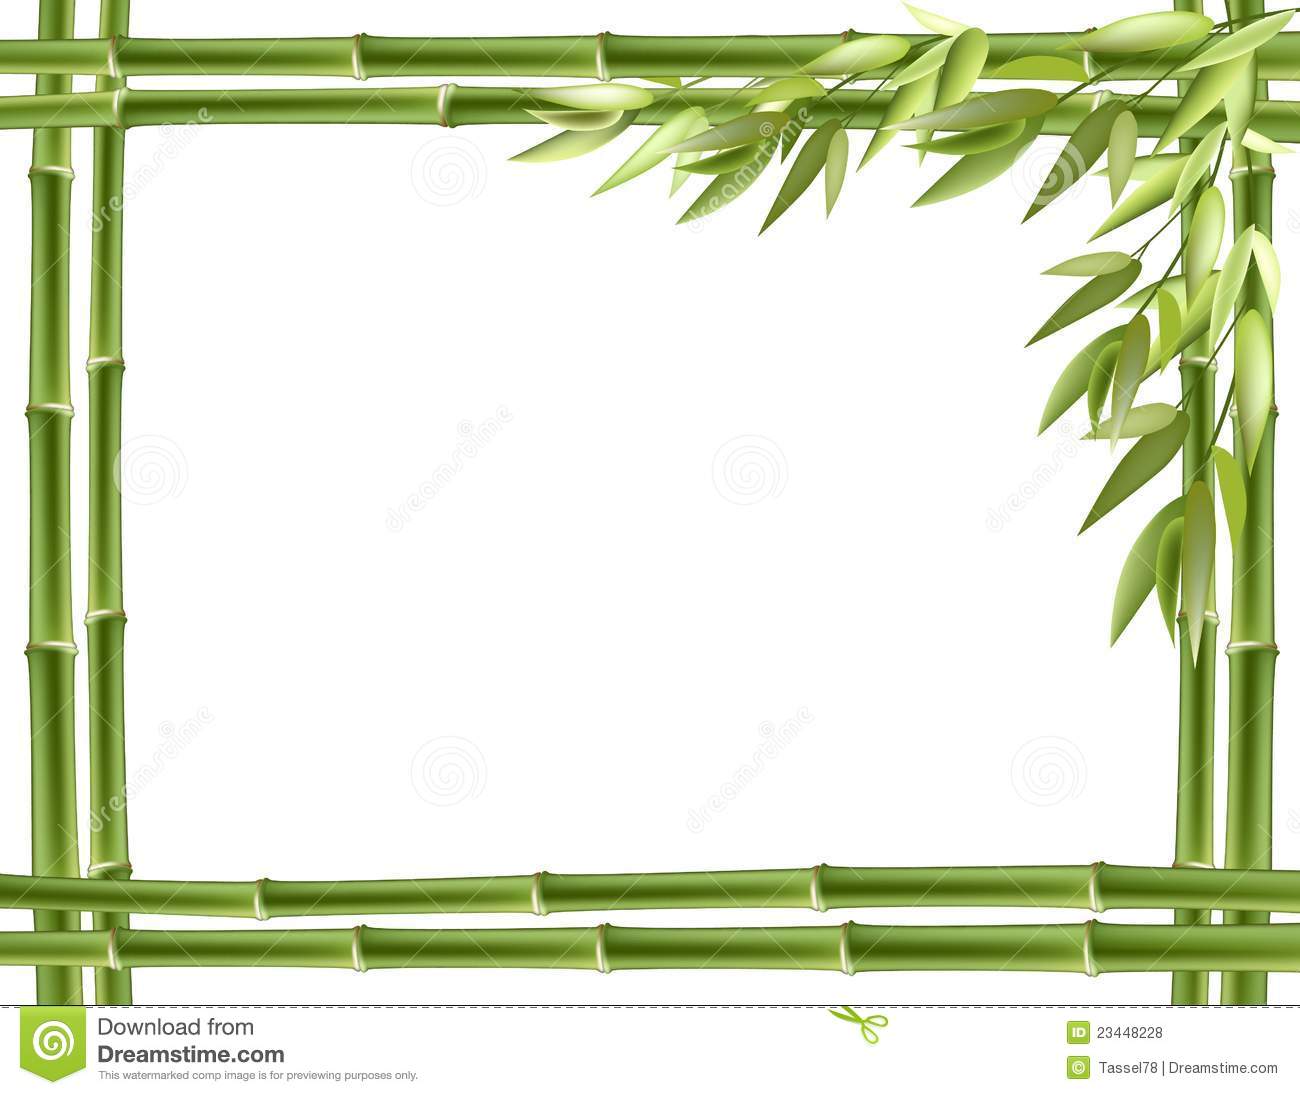 Bamboo borders